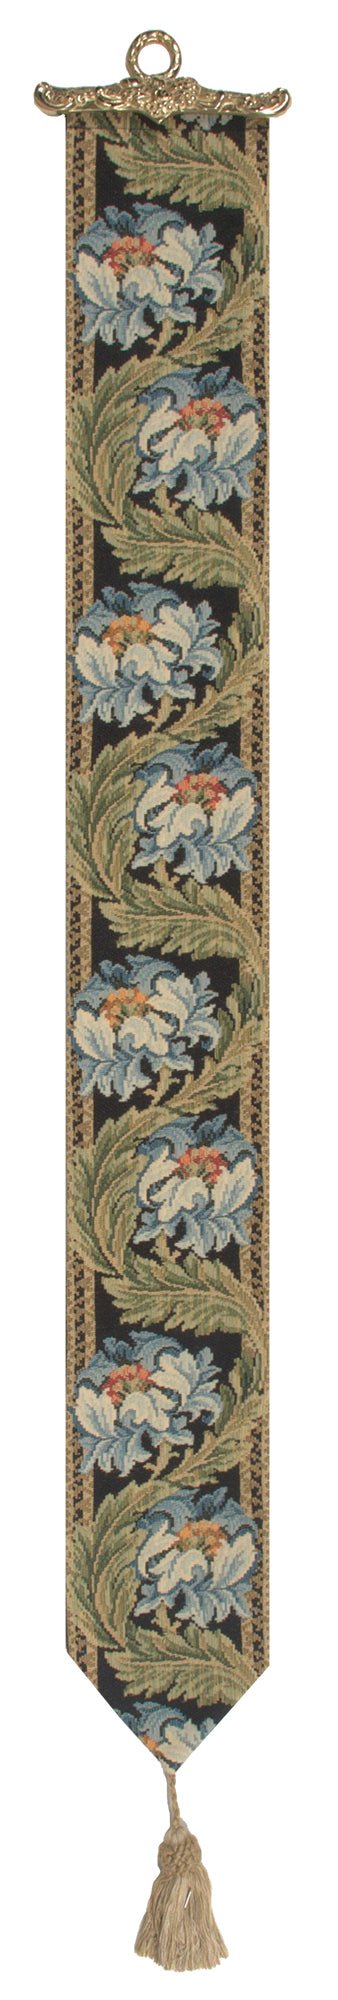 Holy Grail European Tapestry Bell Pull - RoseStraya.com